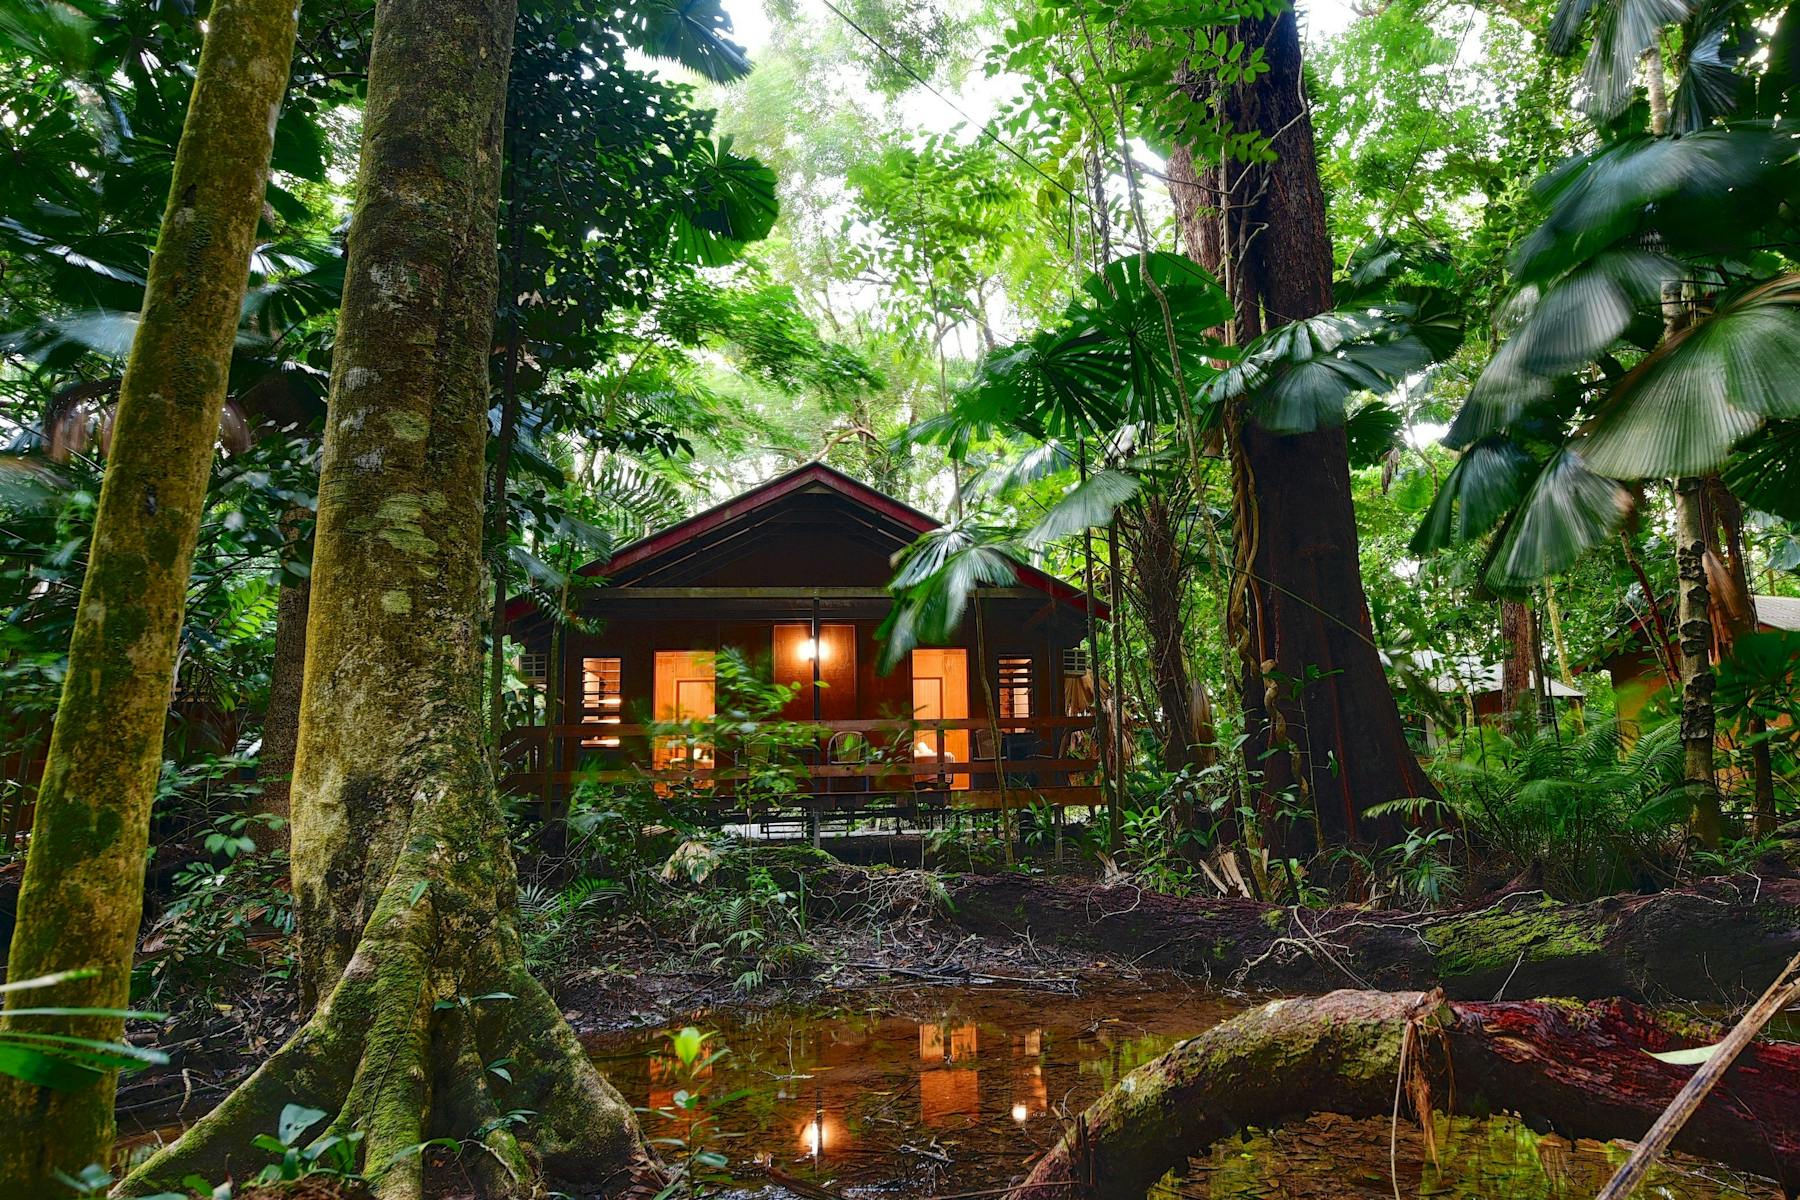 Mackay Cabin nestled in the rainforest.